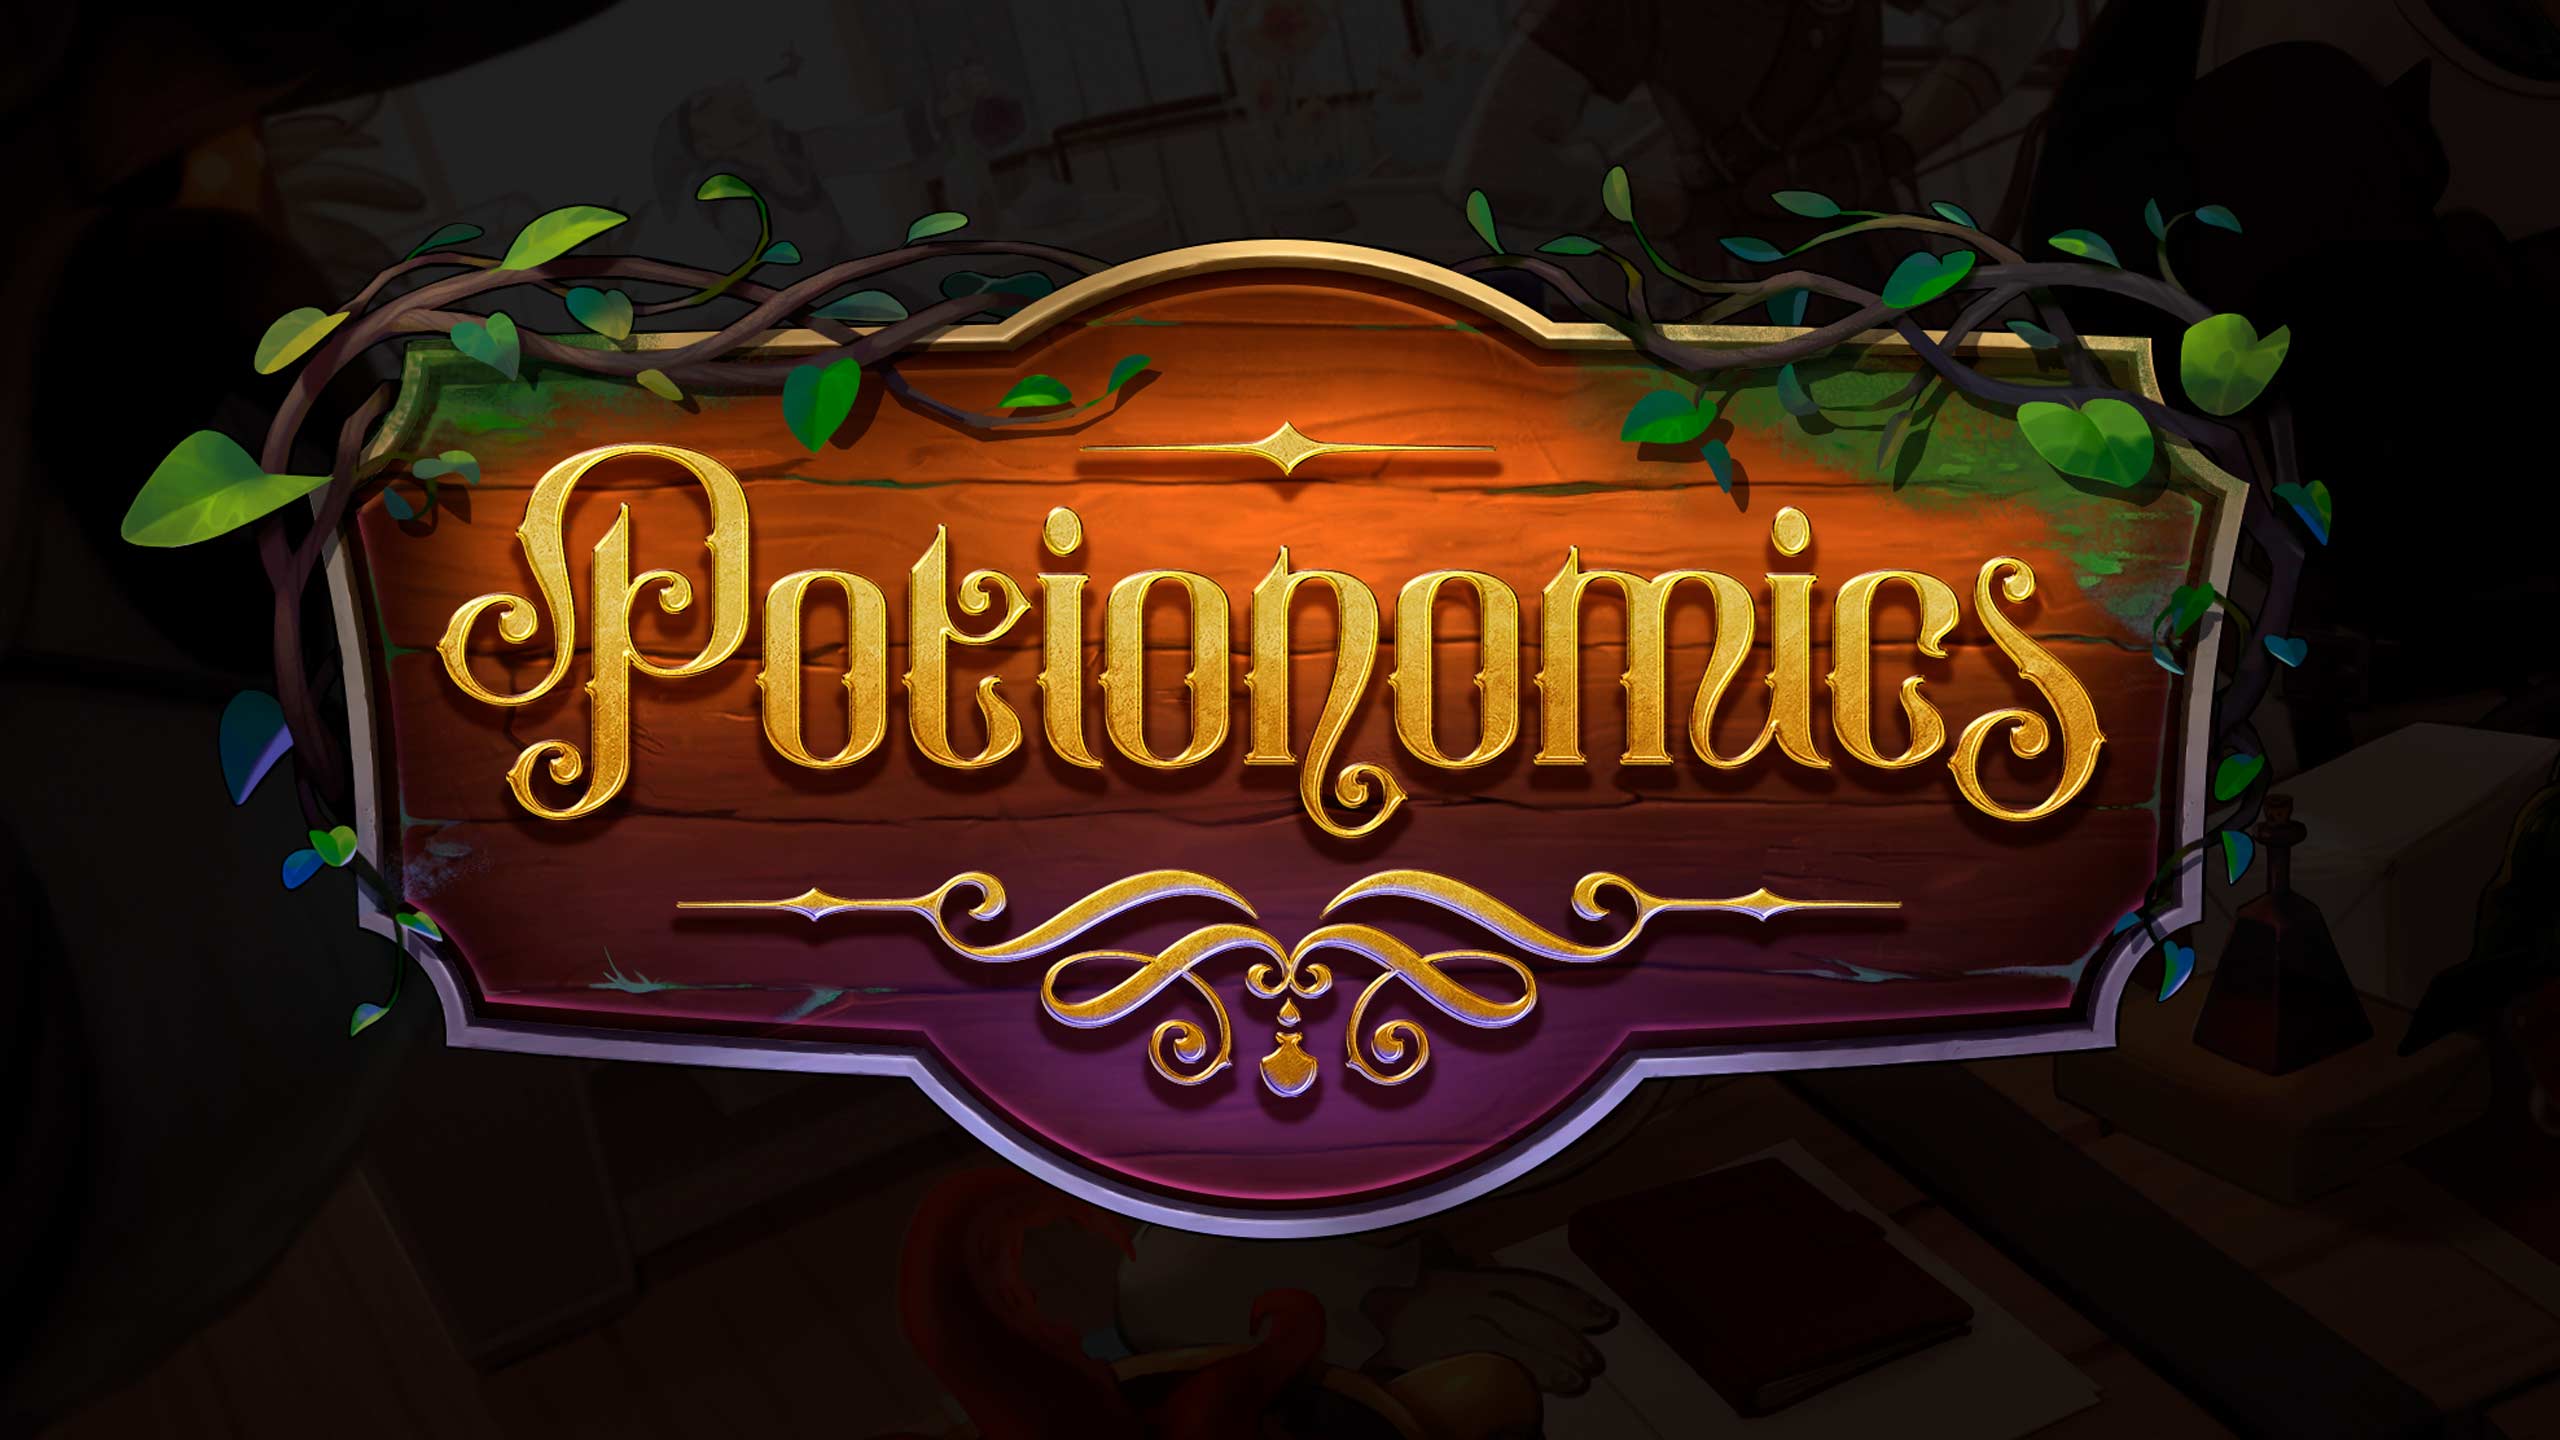 Den färdigdesignade logotypen för dataspelet Potionomics